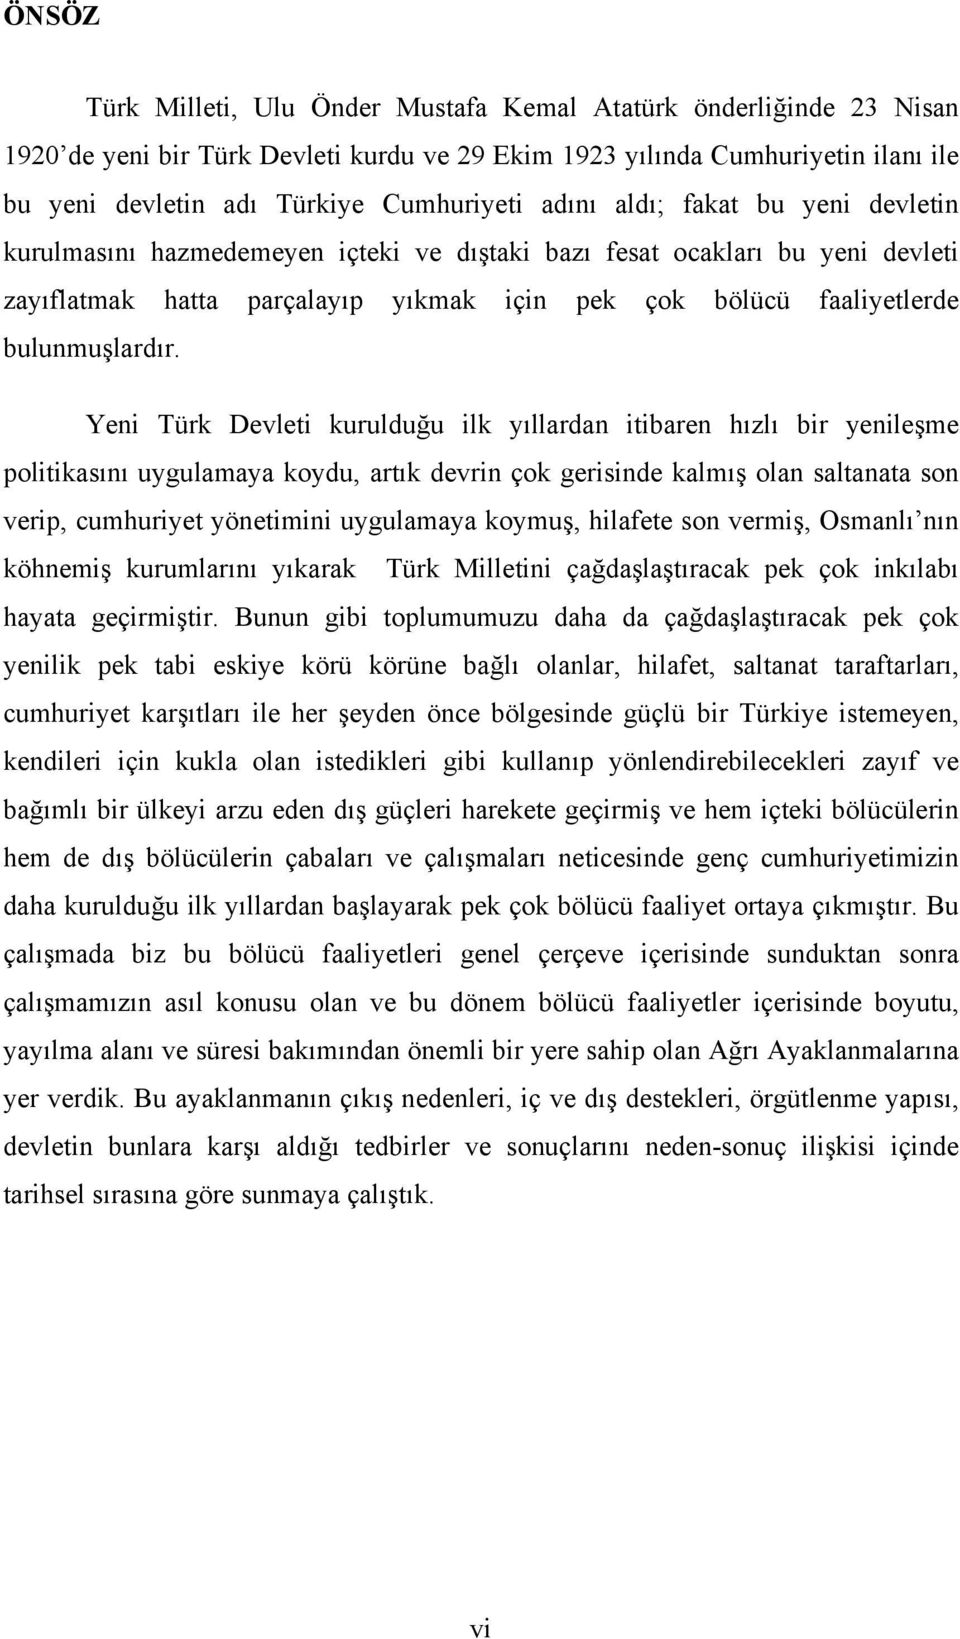 Yeni Türk Devleti kurulduğu ilk yıllardan itibaren hızlı bir yenileşme politikasını uygulamaya koydu, artık devrin çok gerisinde kalmış olan saltanata son verip, cumhuriyet yönetimini uygulamaya